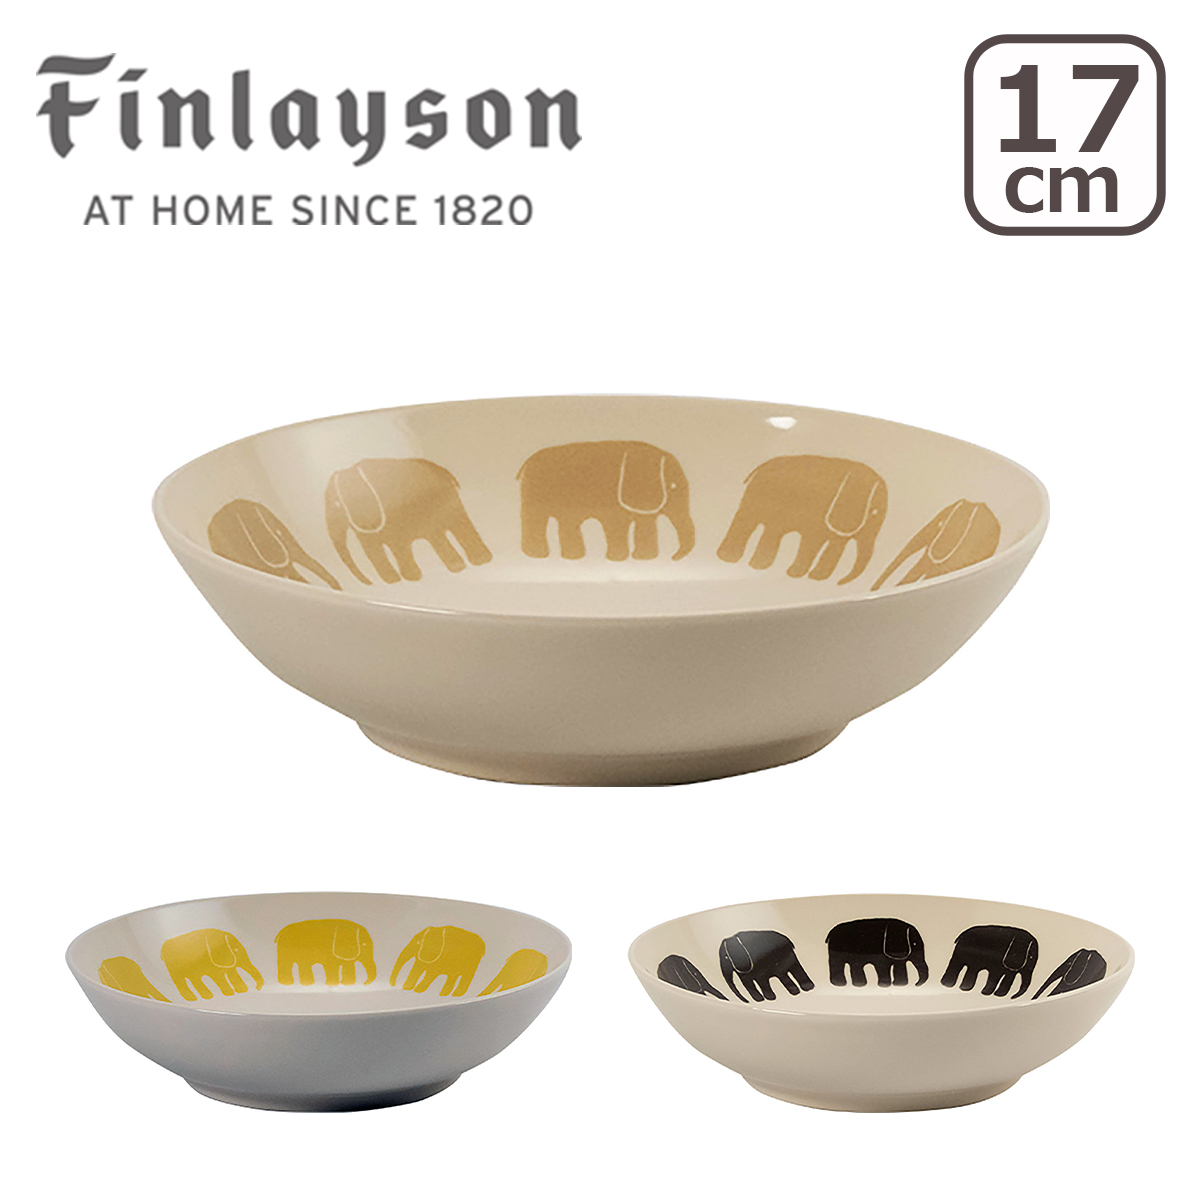 フィンレイソン 17cmボウル FIN140 リサイクル エレファンティ リサイクルセラミック 北欧デザイン 日本製 Finlayson